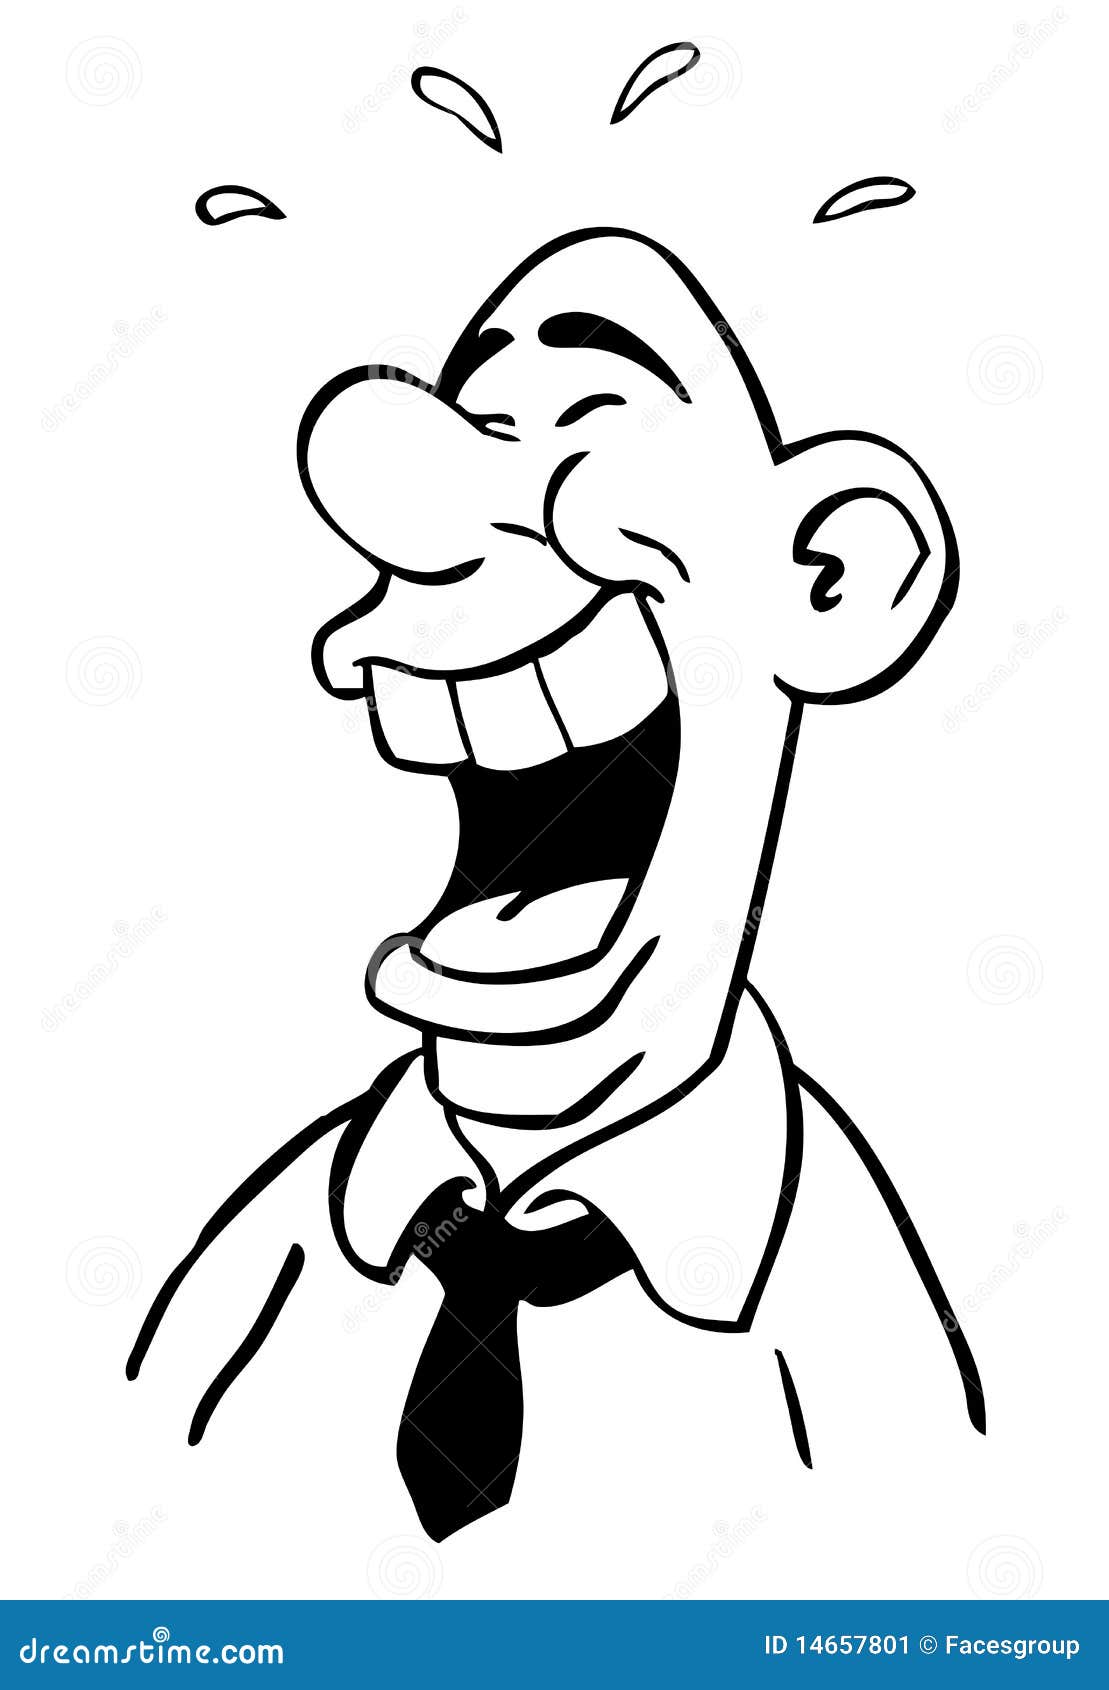 Lachender Mann Der Karikaturzeichnung Stockbild Bild